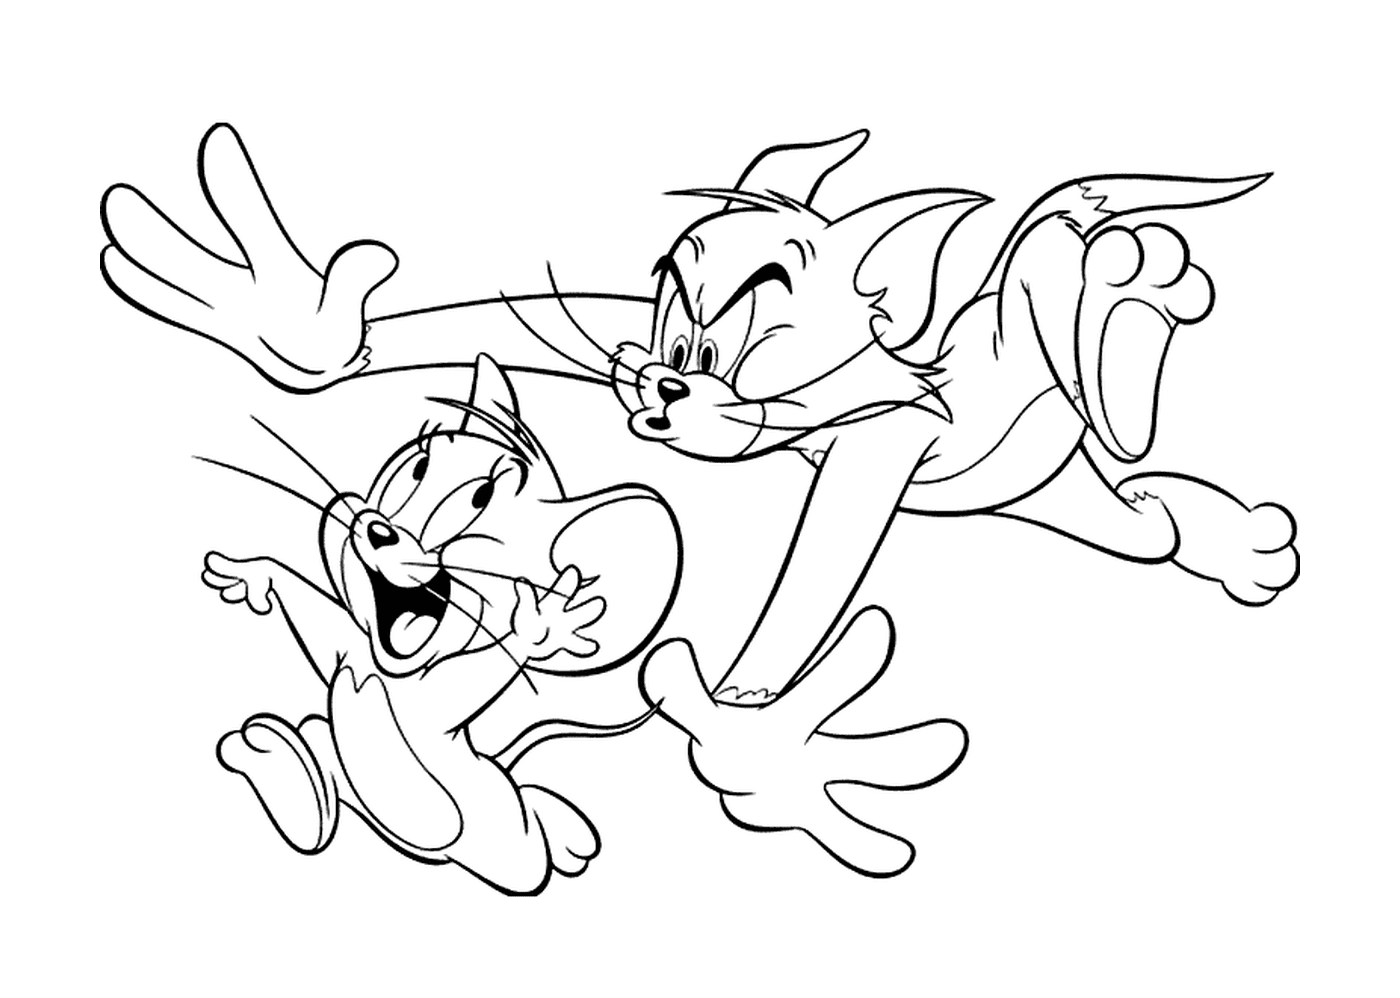  Tom corre tras Jerry 